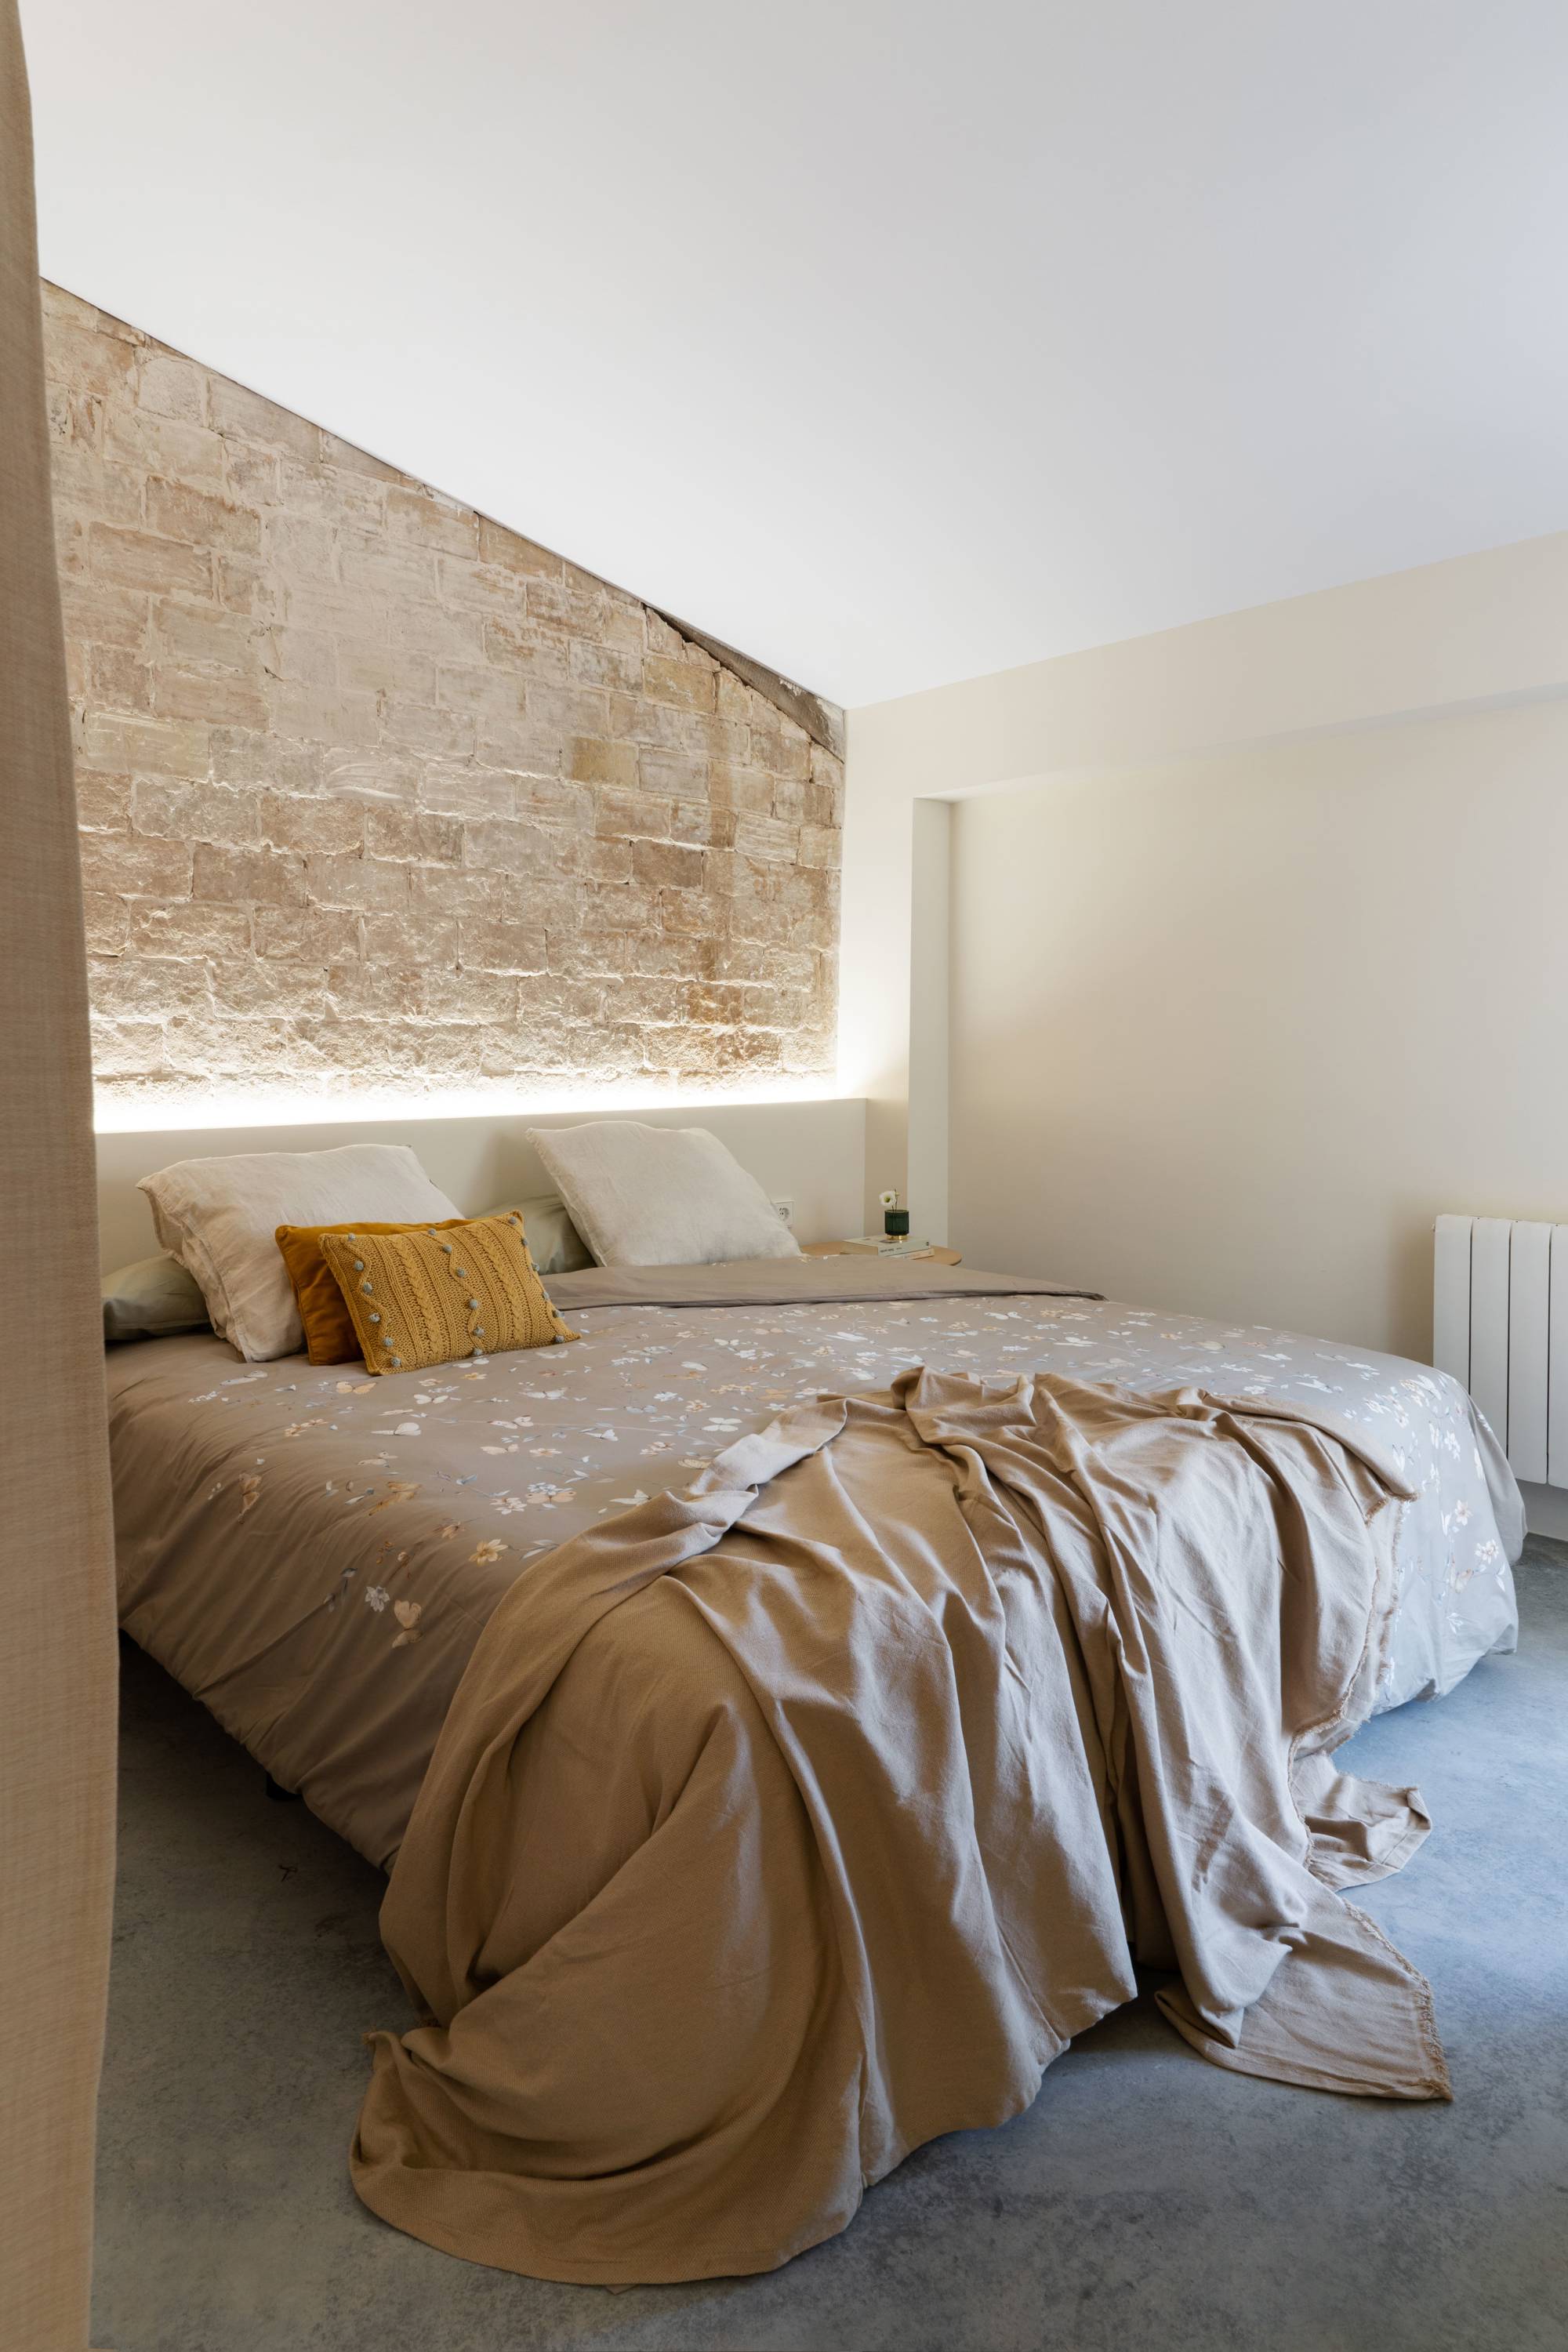 Dormitorio después de la reforma con pared de ladrillos, cabecero iluminado y cama XXL con cojines mostaza y plaid.